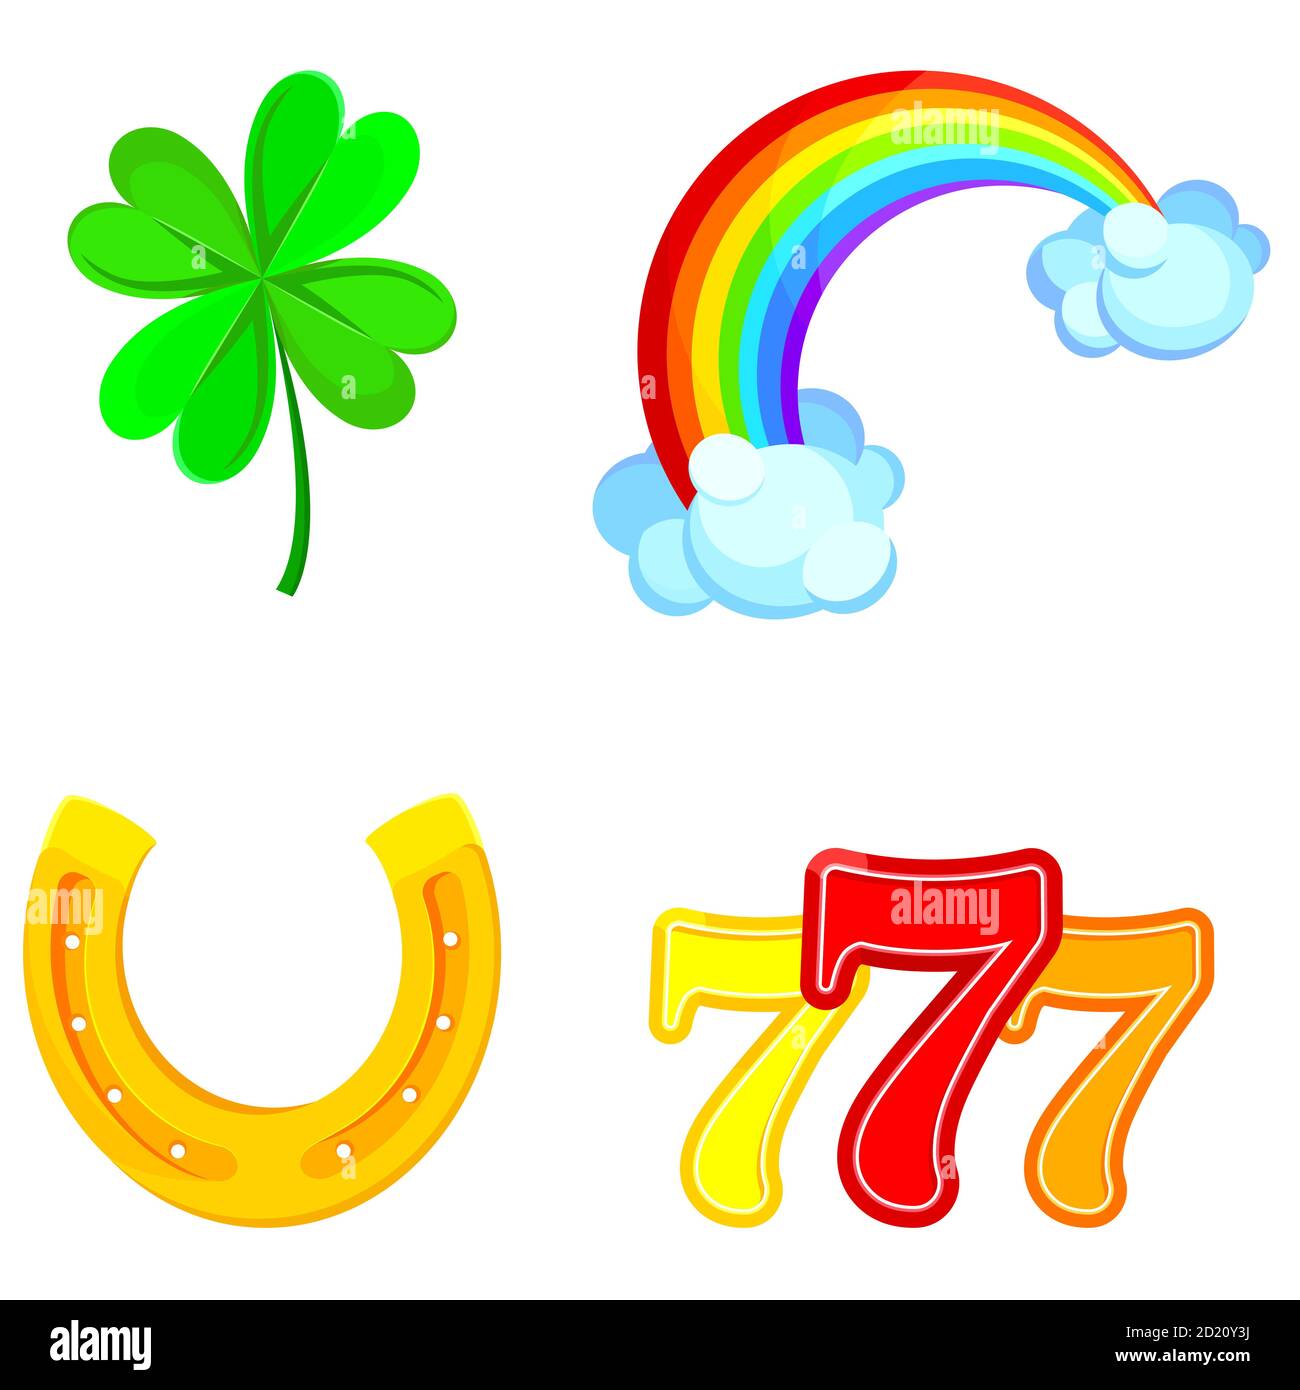 Glückssymbole. Klee, Regenbogen, Hufeisen und dreifache Siebener im Cartoon-Stil. Stock Vektor